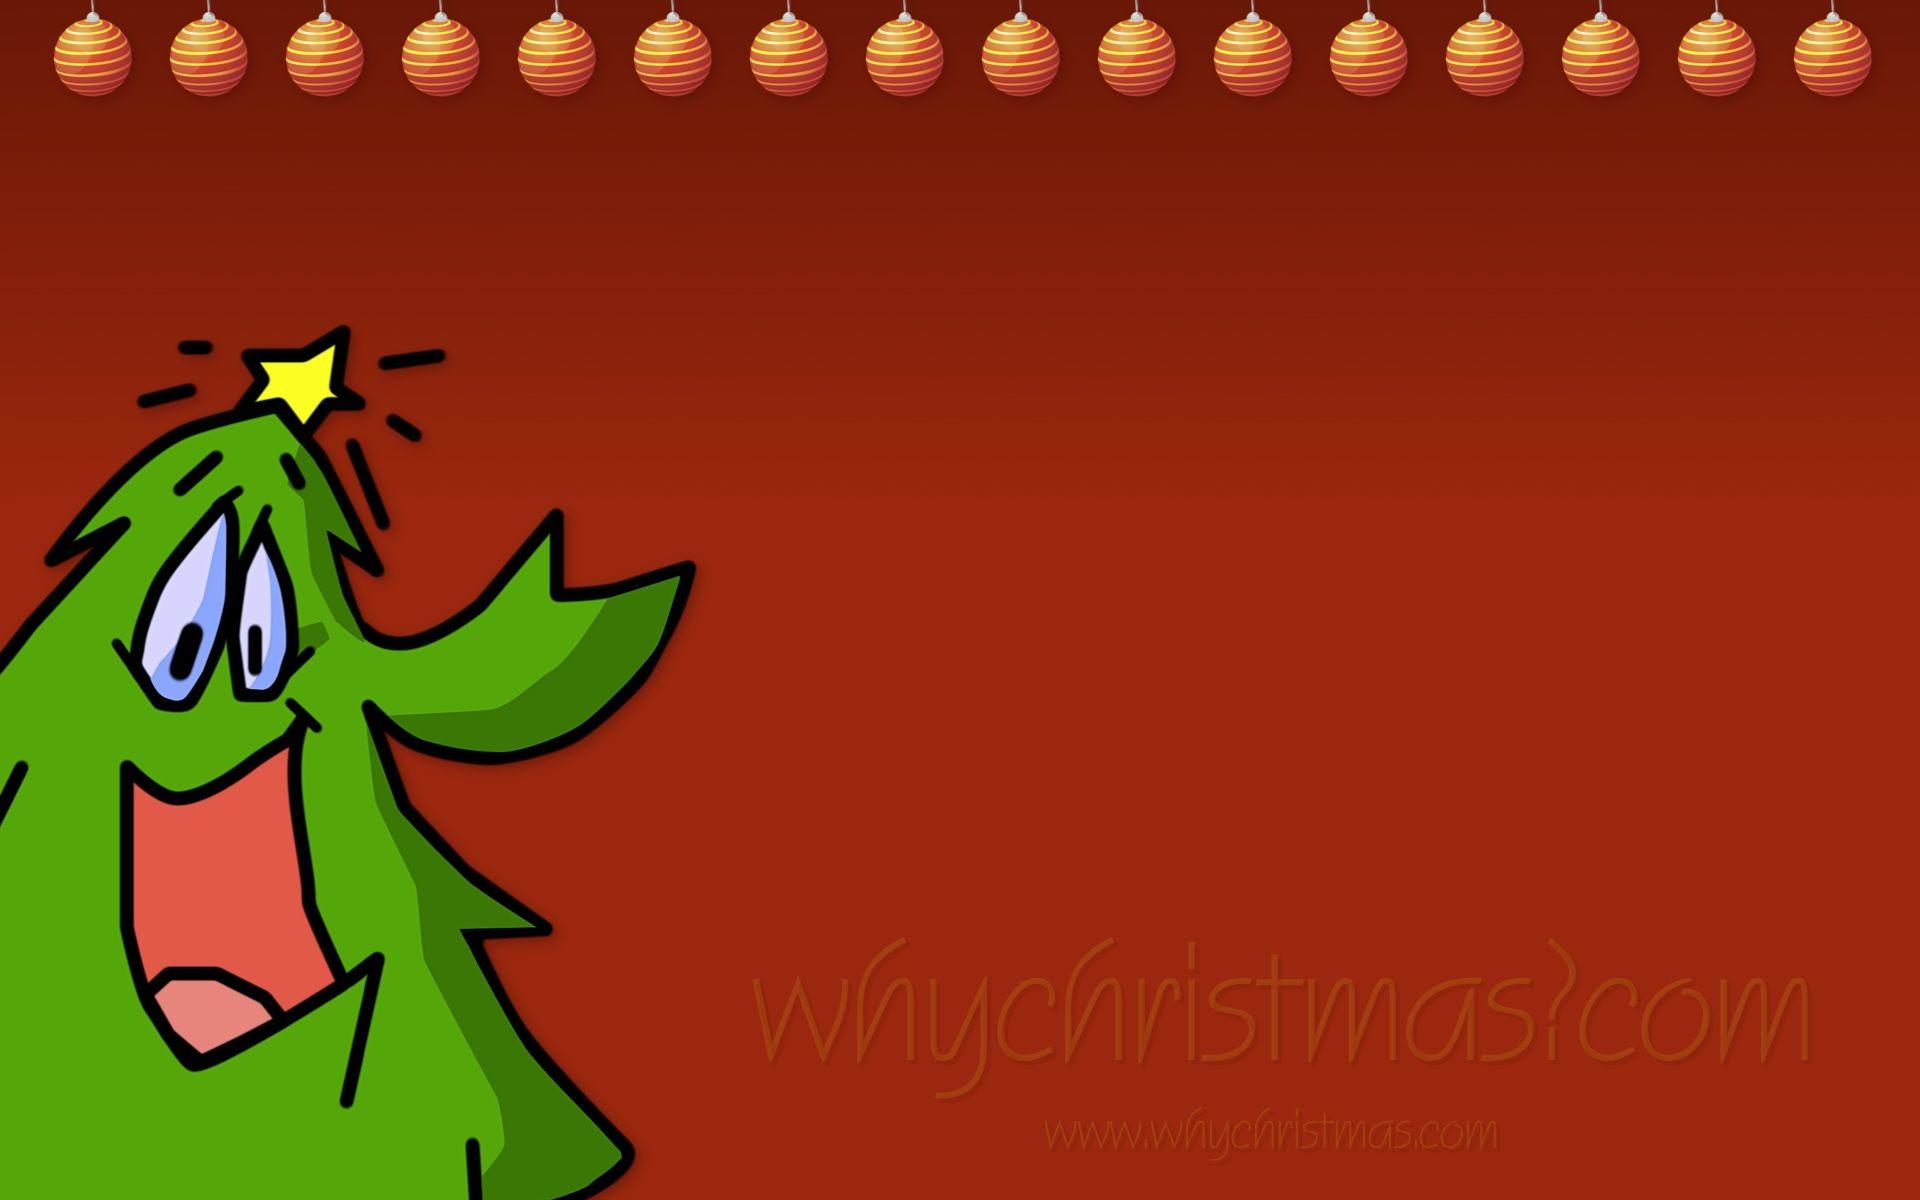 Christmas Wallpaper - Christmas Fun - whychristmas?com